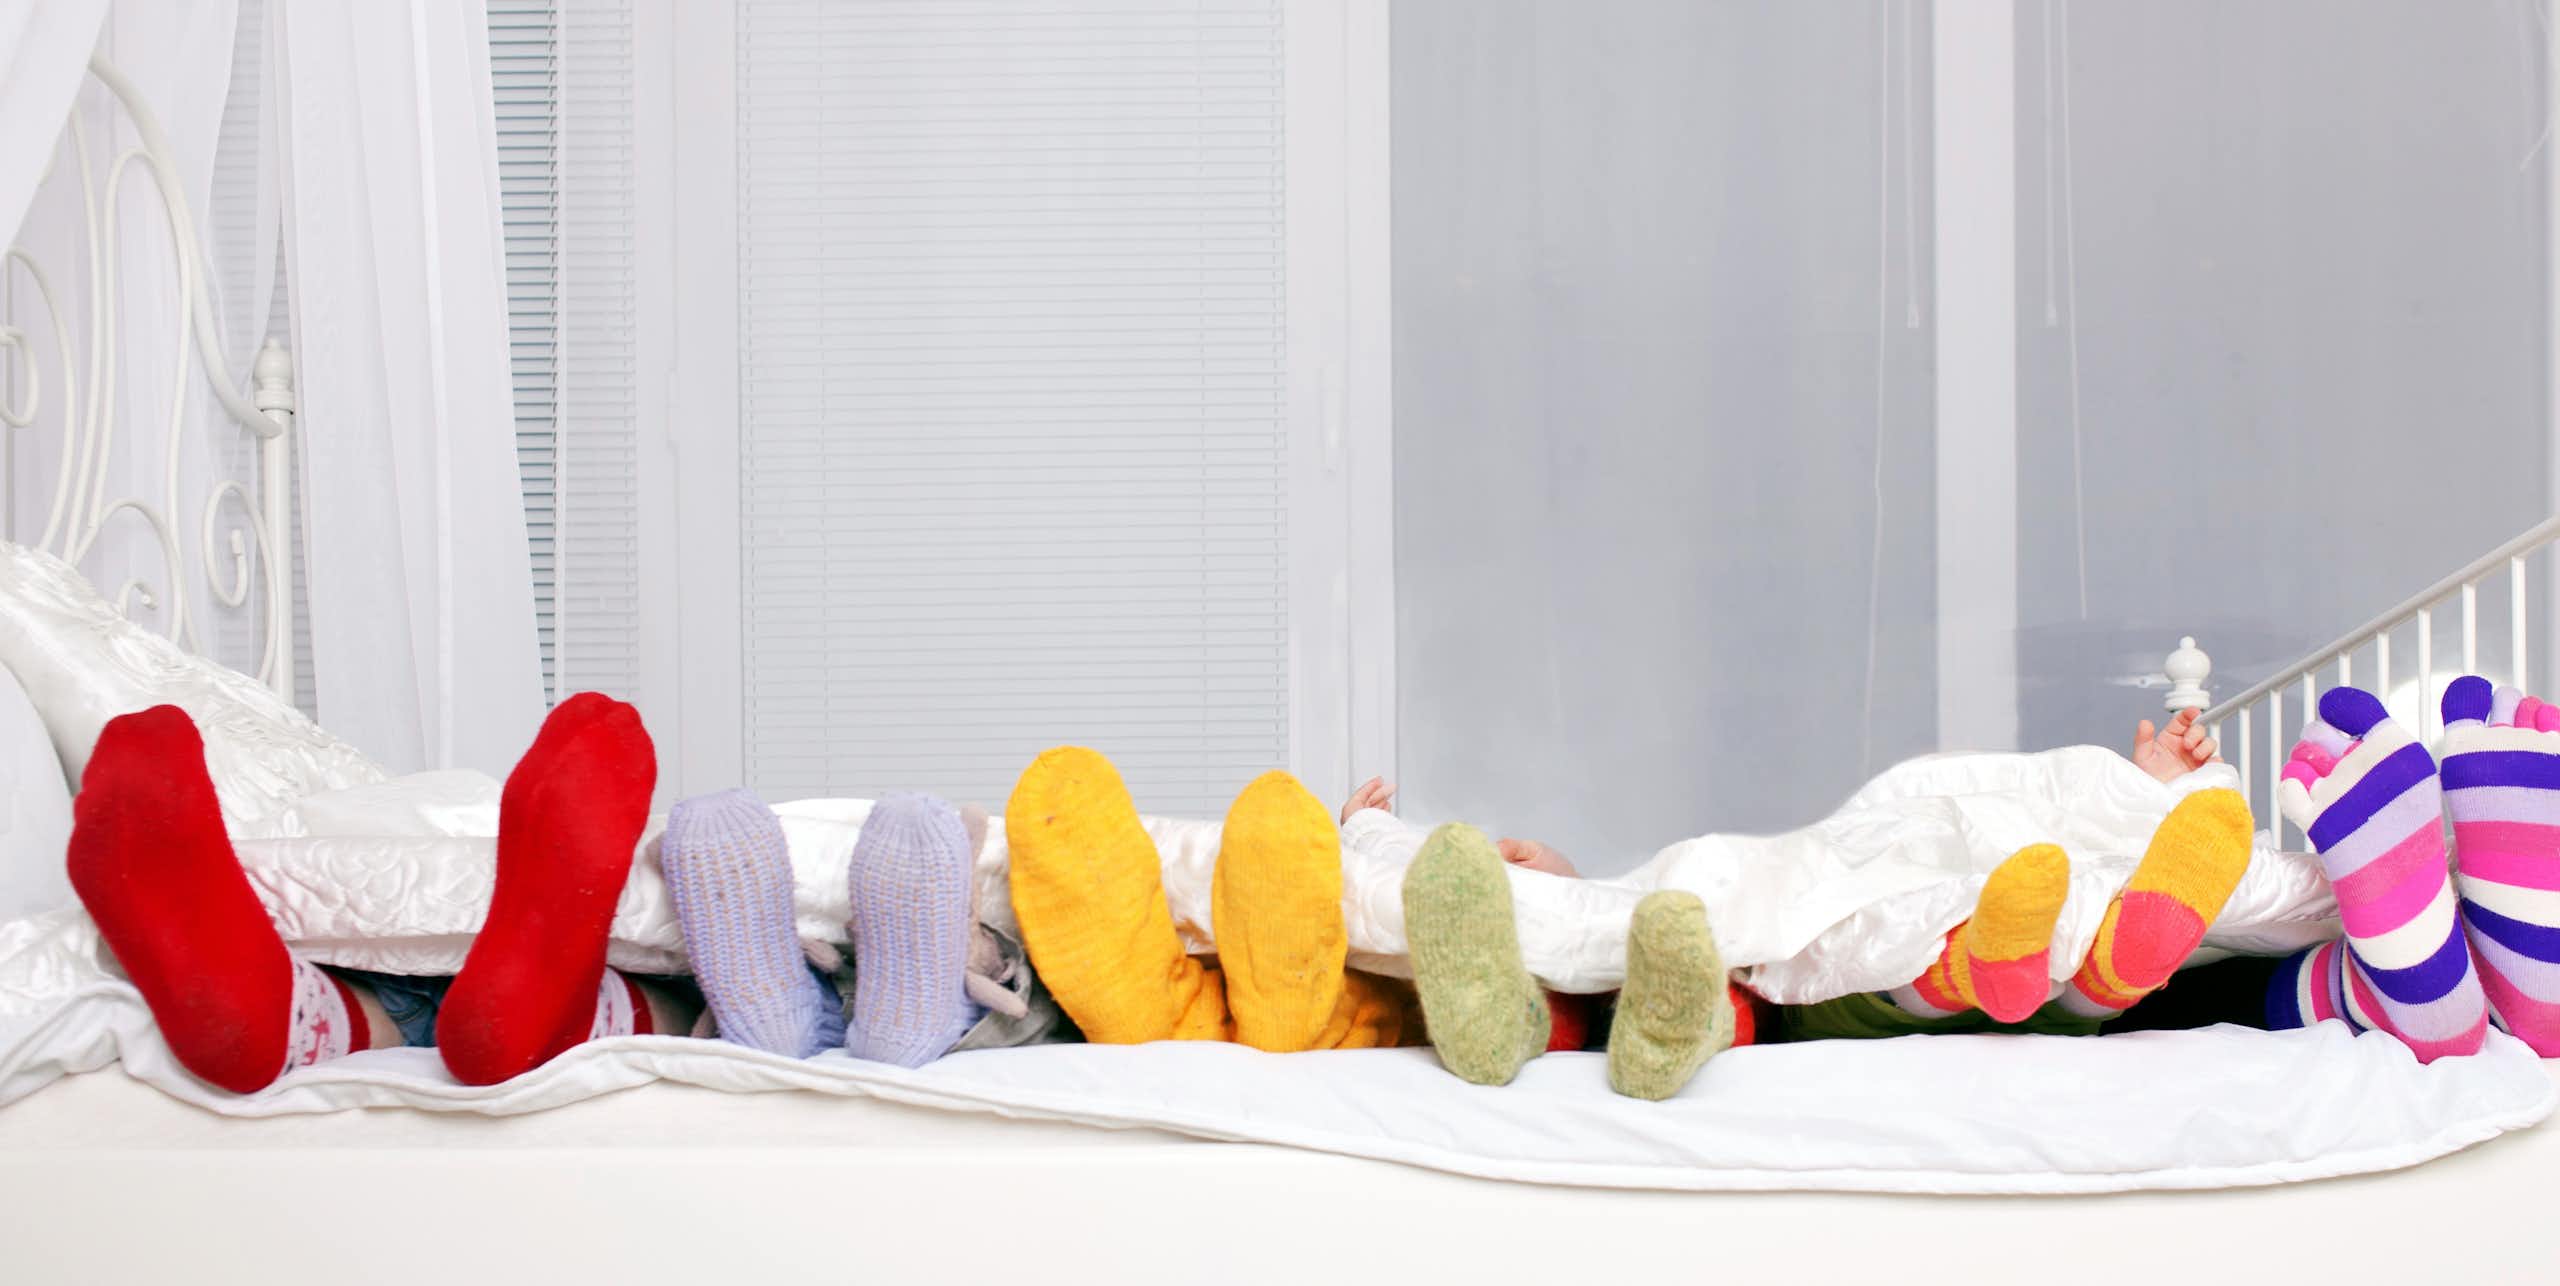 Diferentes tamaños de pies enfundados en calcetines en una cama